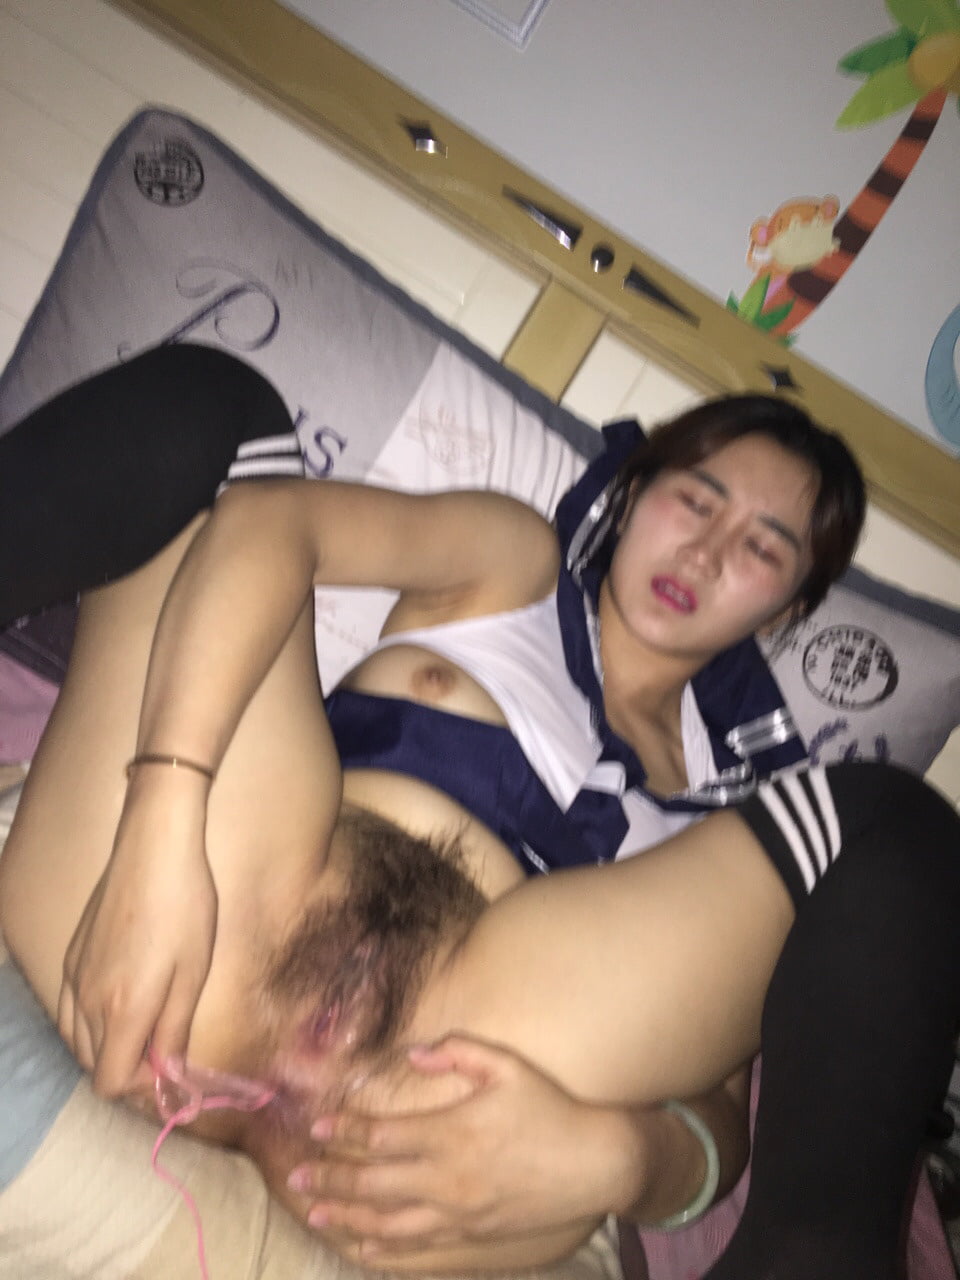 Chinese Slut - Chinese slut - 12 Pics | xHamster